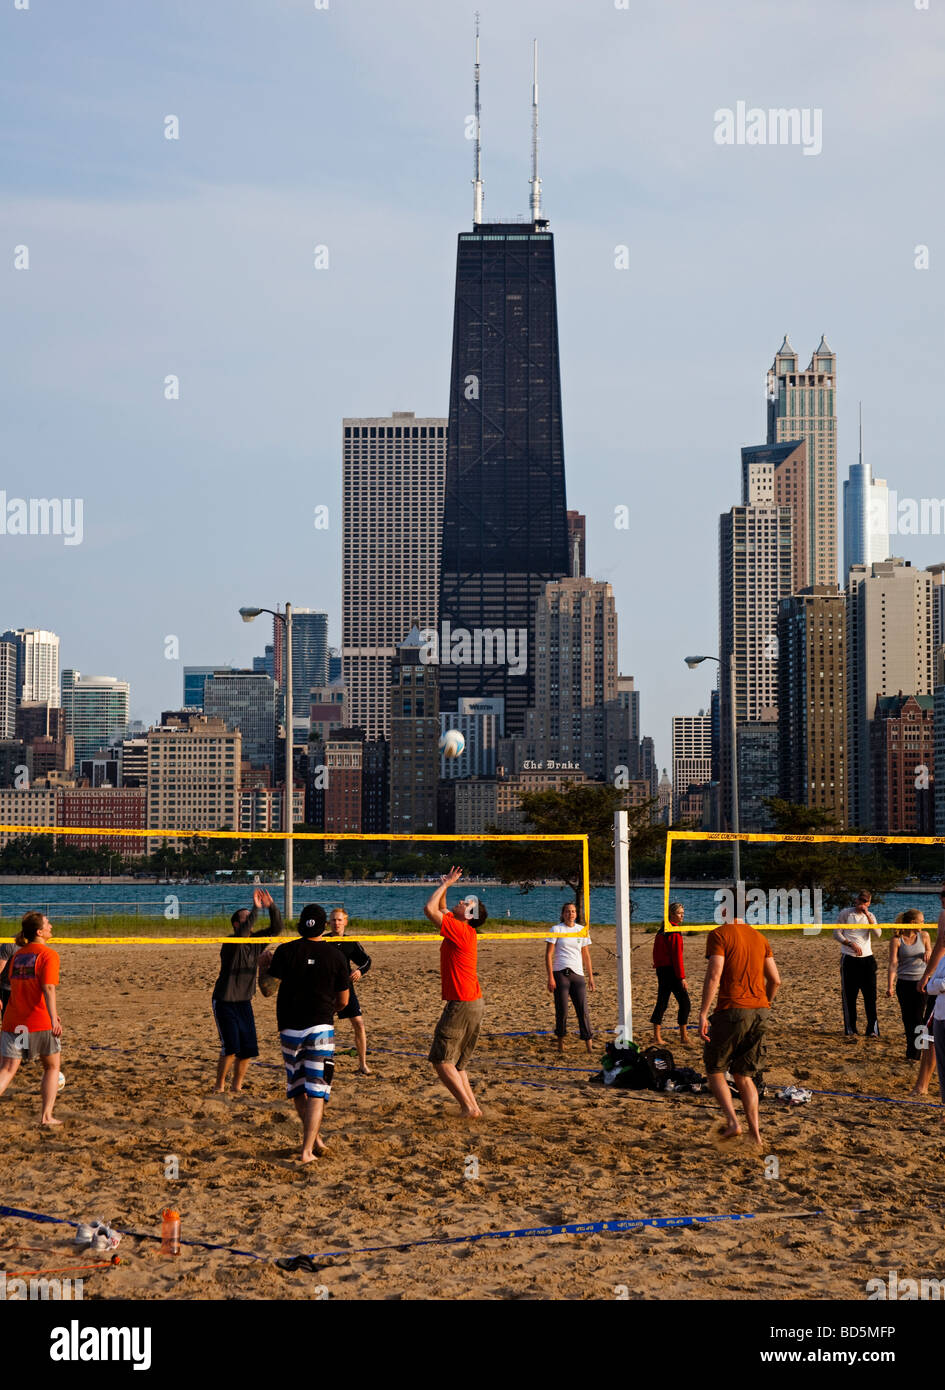 Maschio e femmina giocando a pallavolo, Chicago, Illinois, Stati Uniti d'America Foto Stock